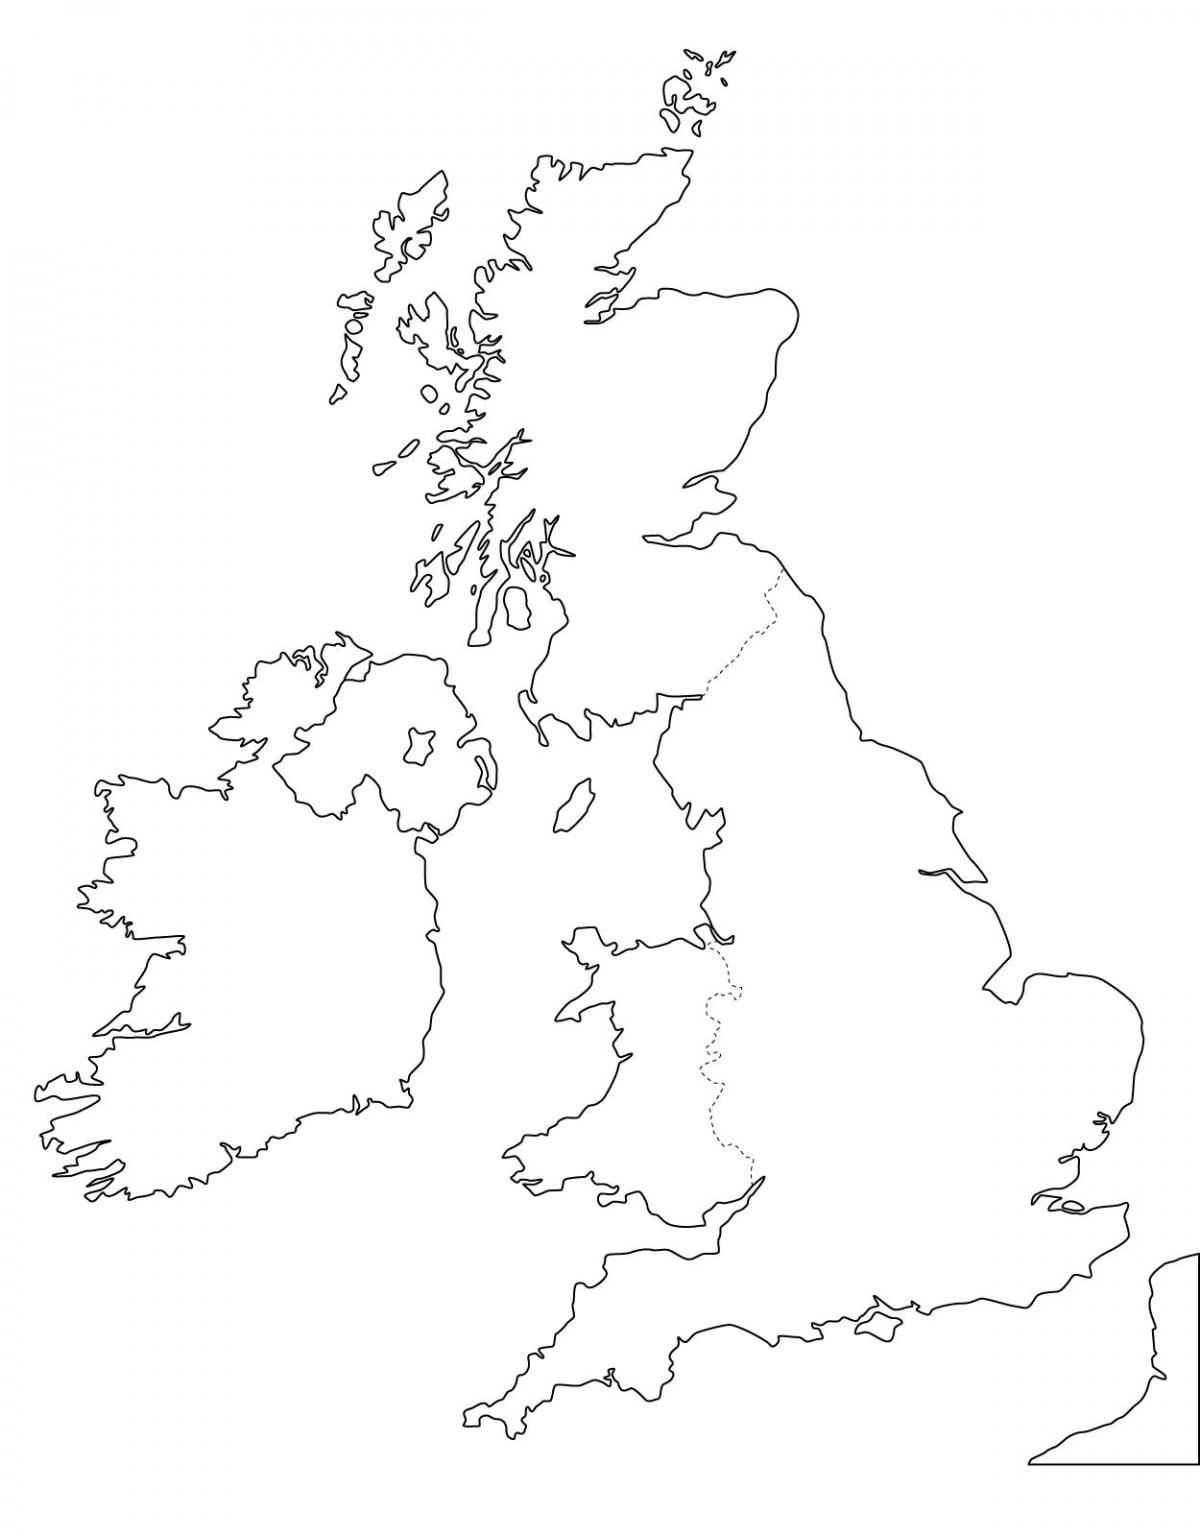 Pusta mapa Zjednoczonego Królestwa (UK)